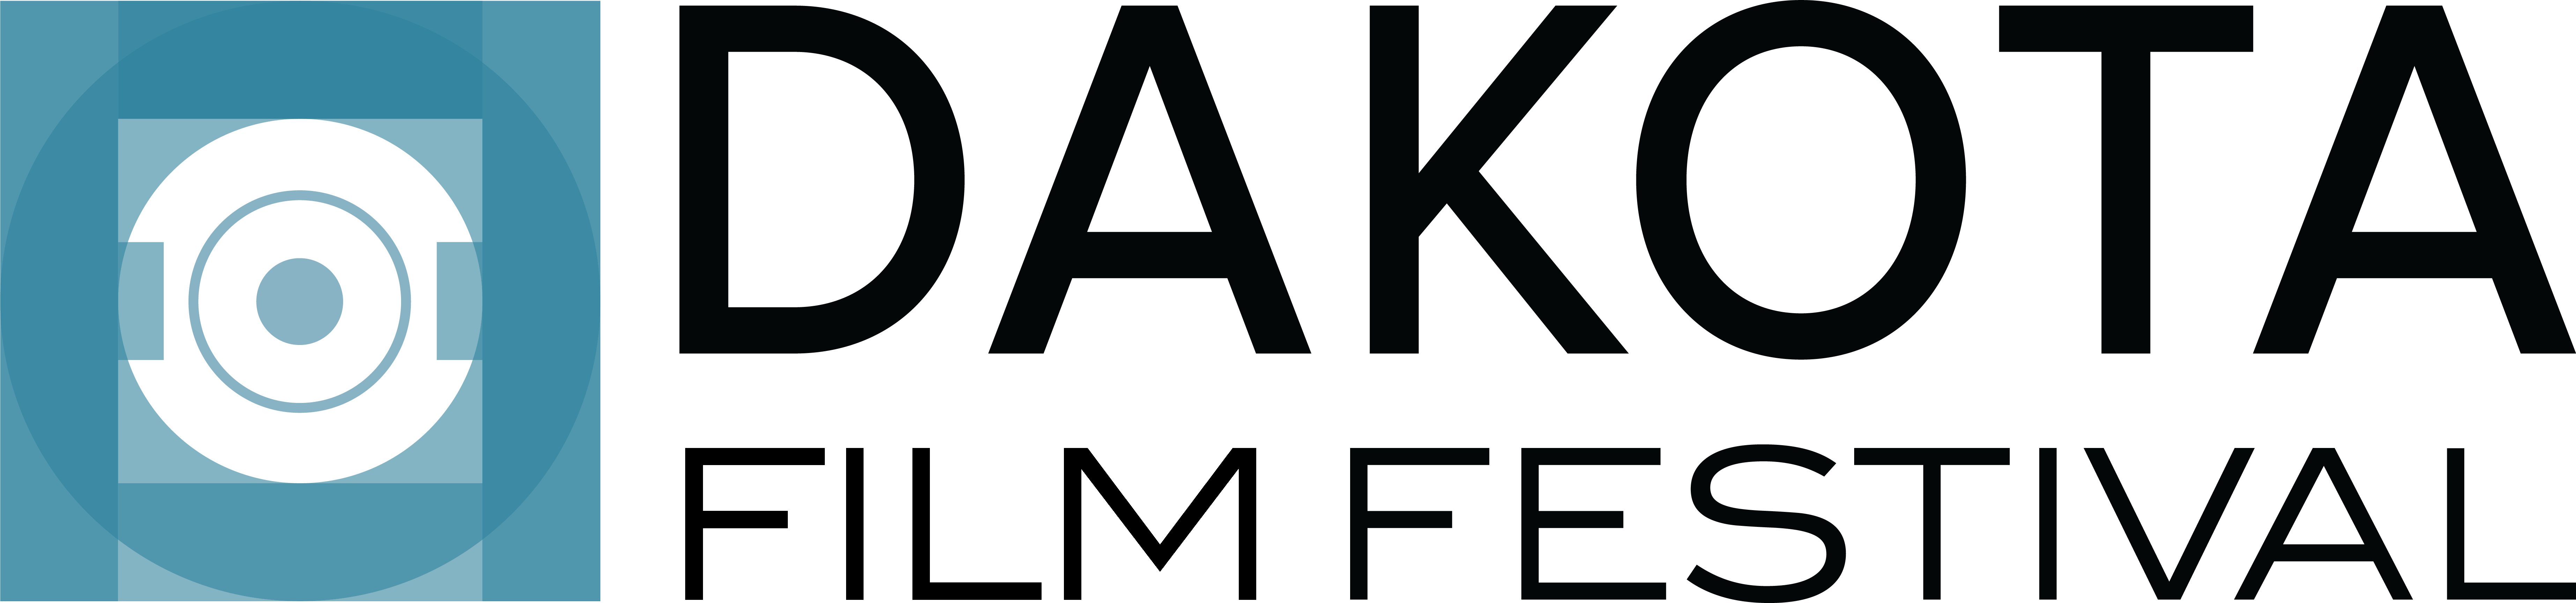 Dakota Film Festival